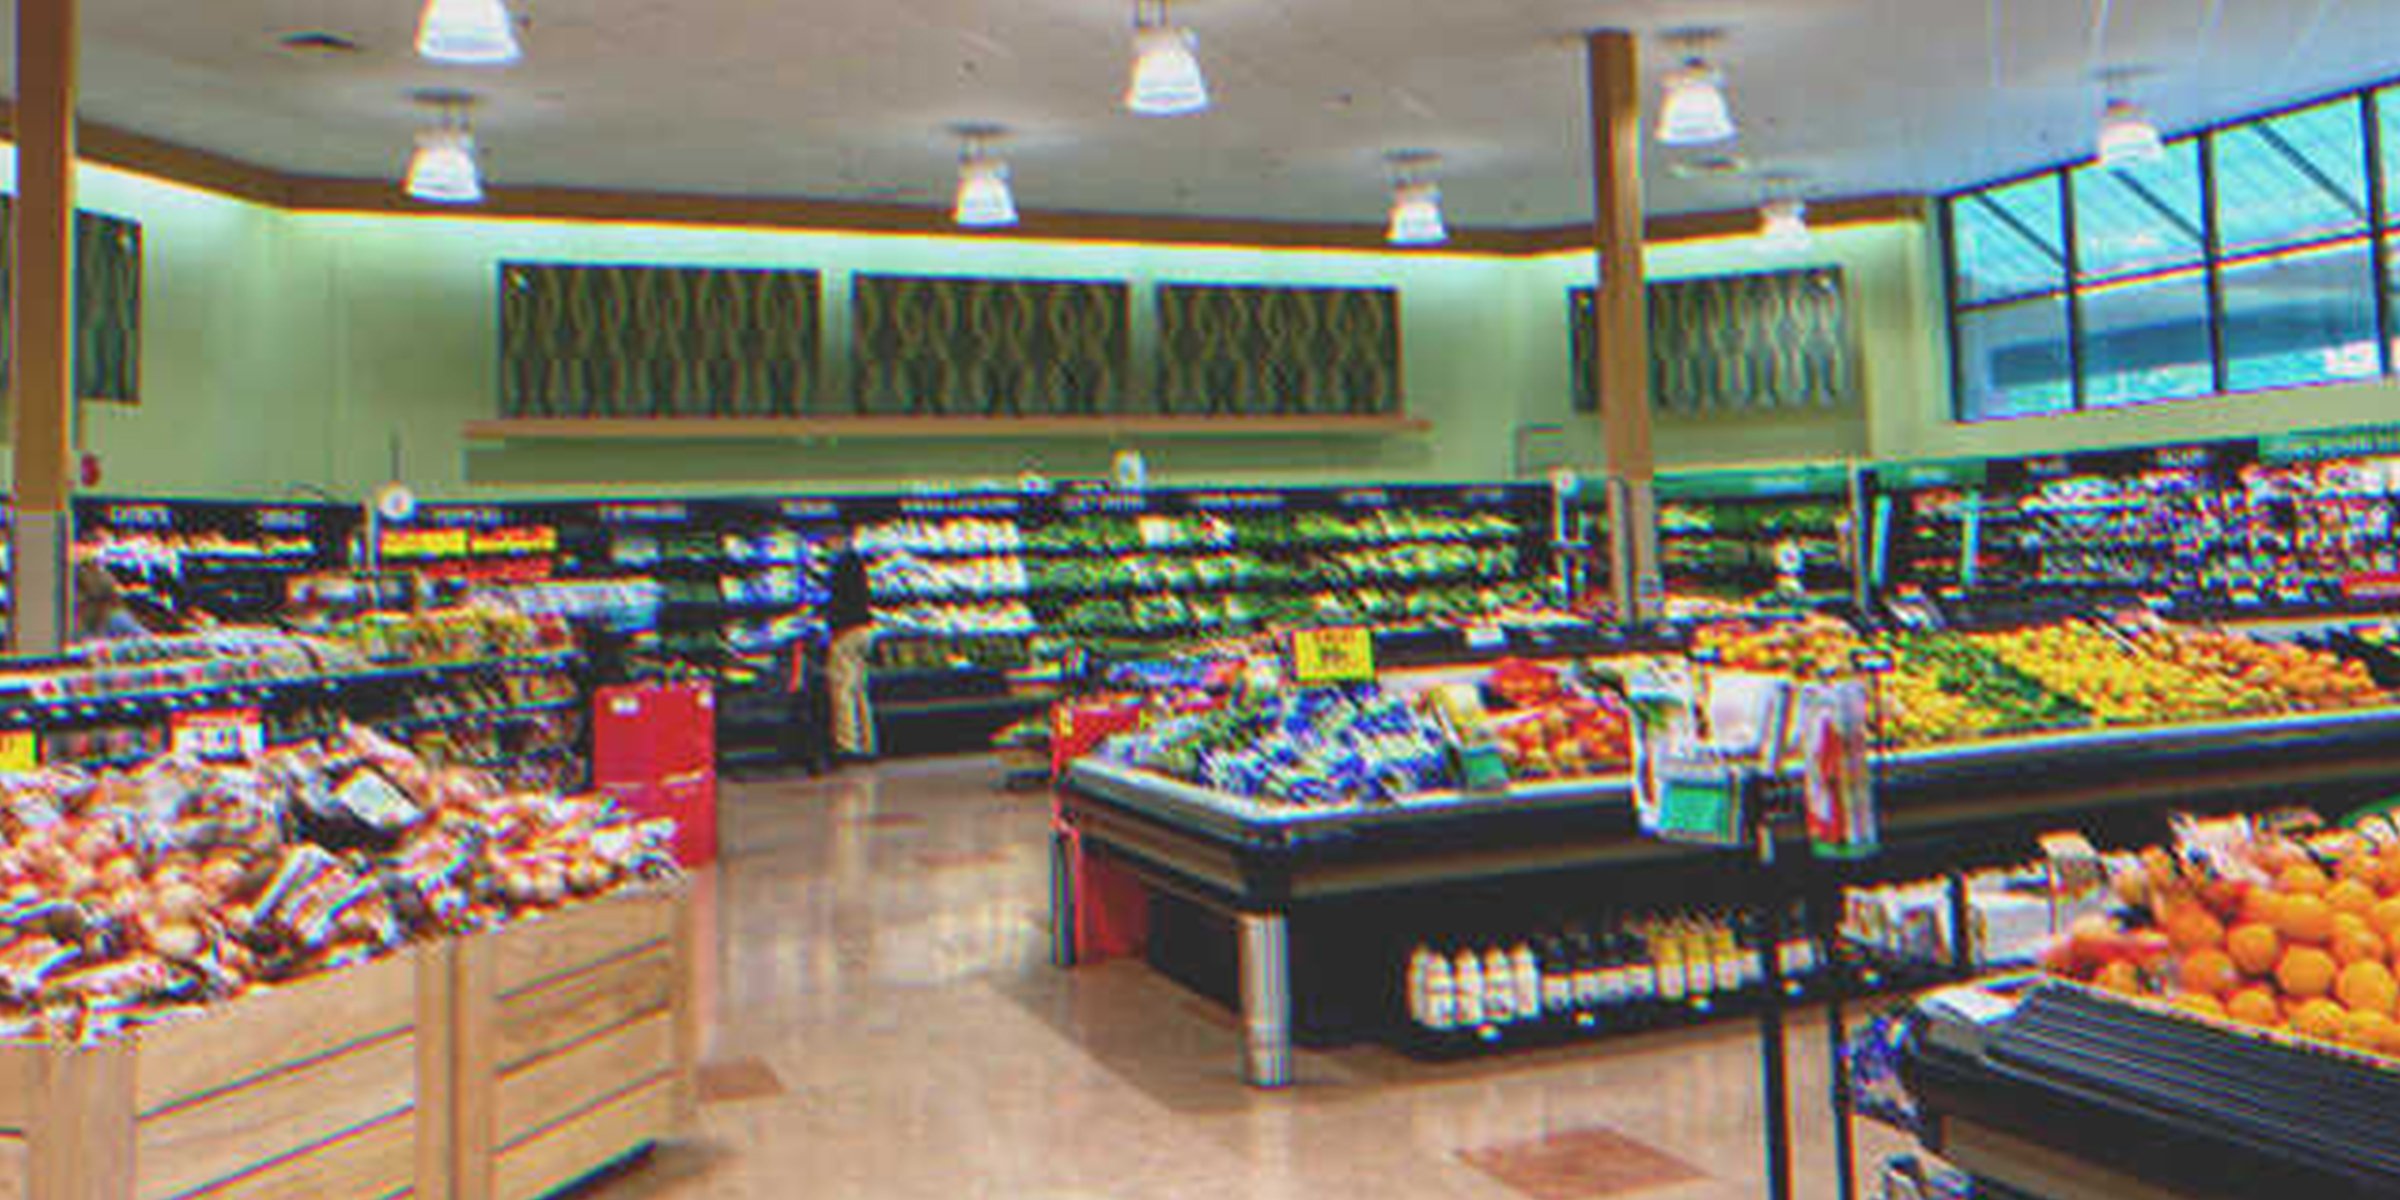 Ein Supermarkt | Quelle: Shutterstock